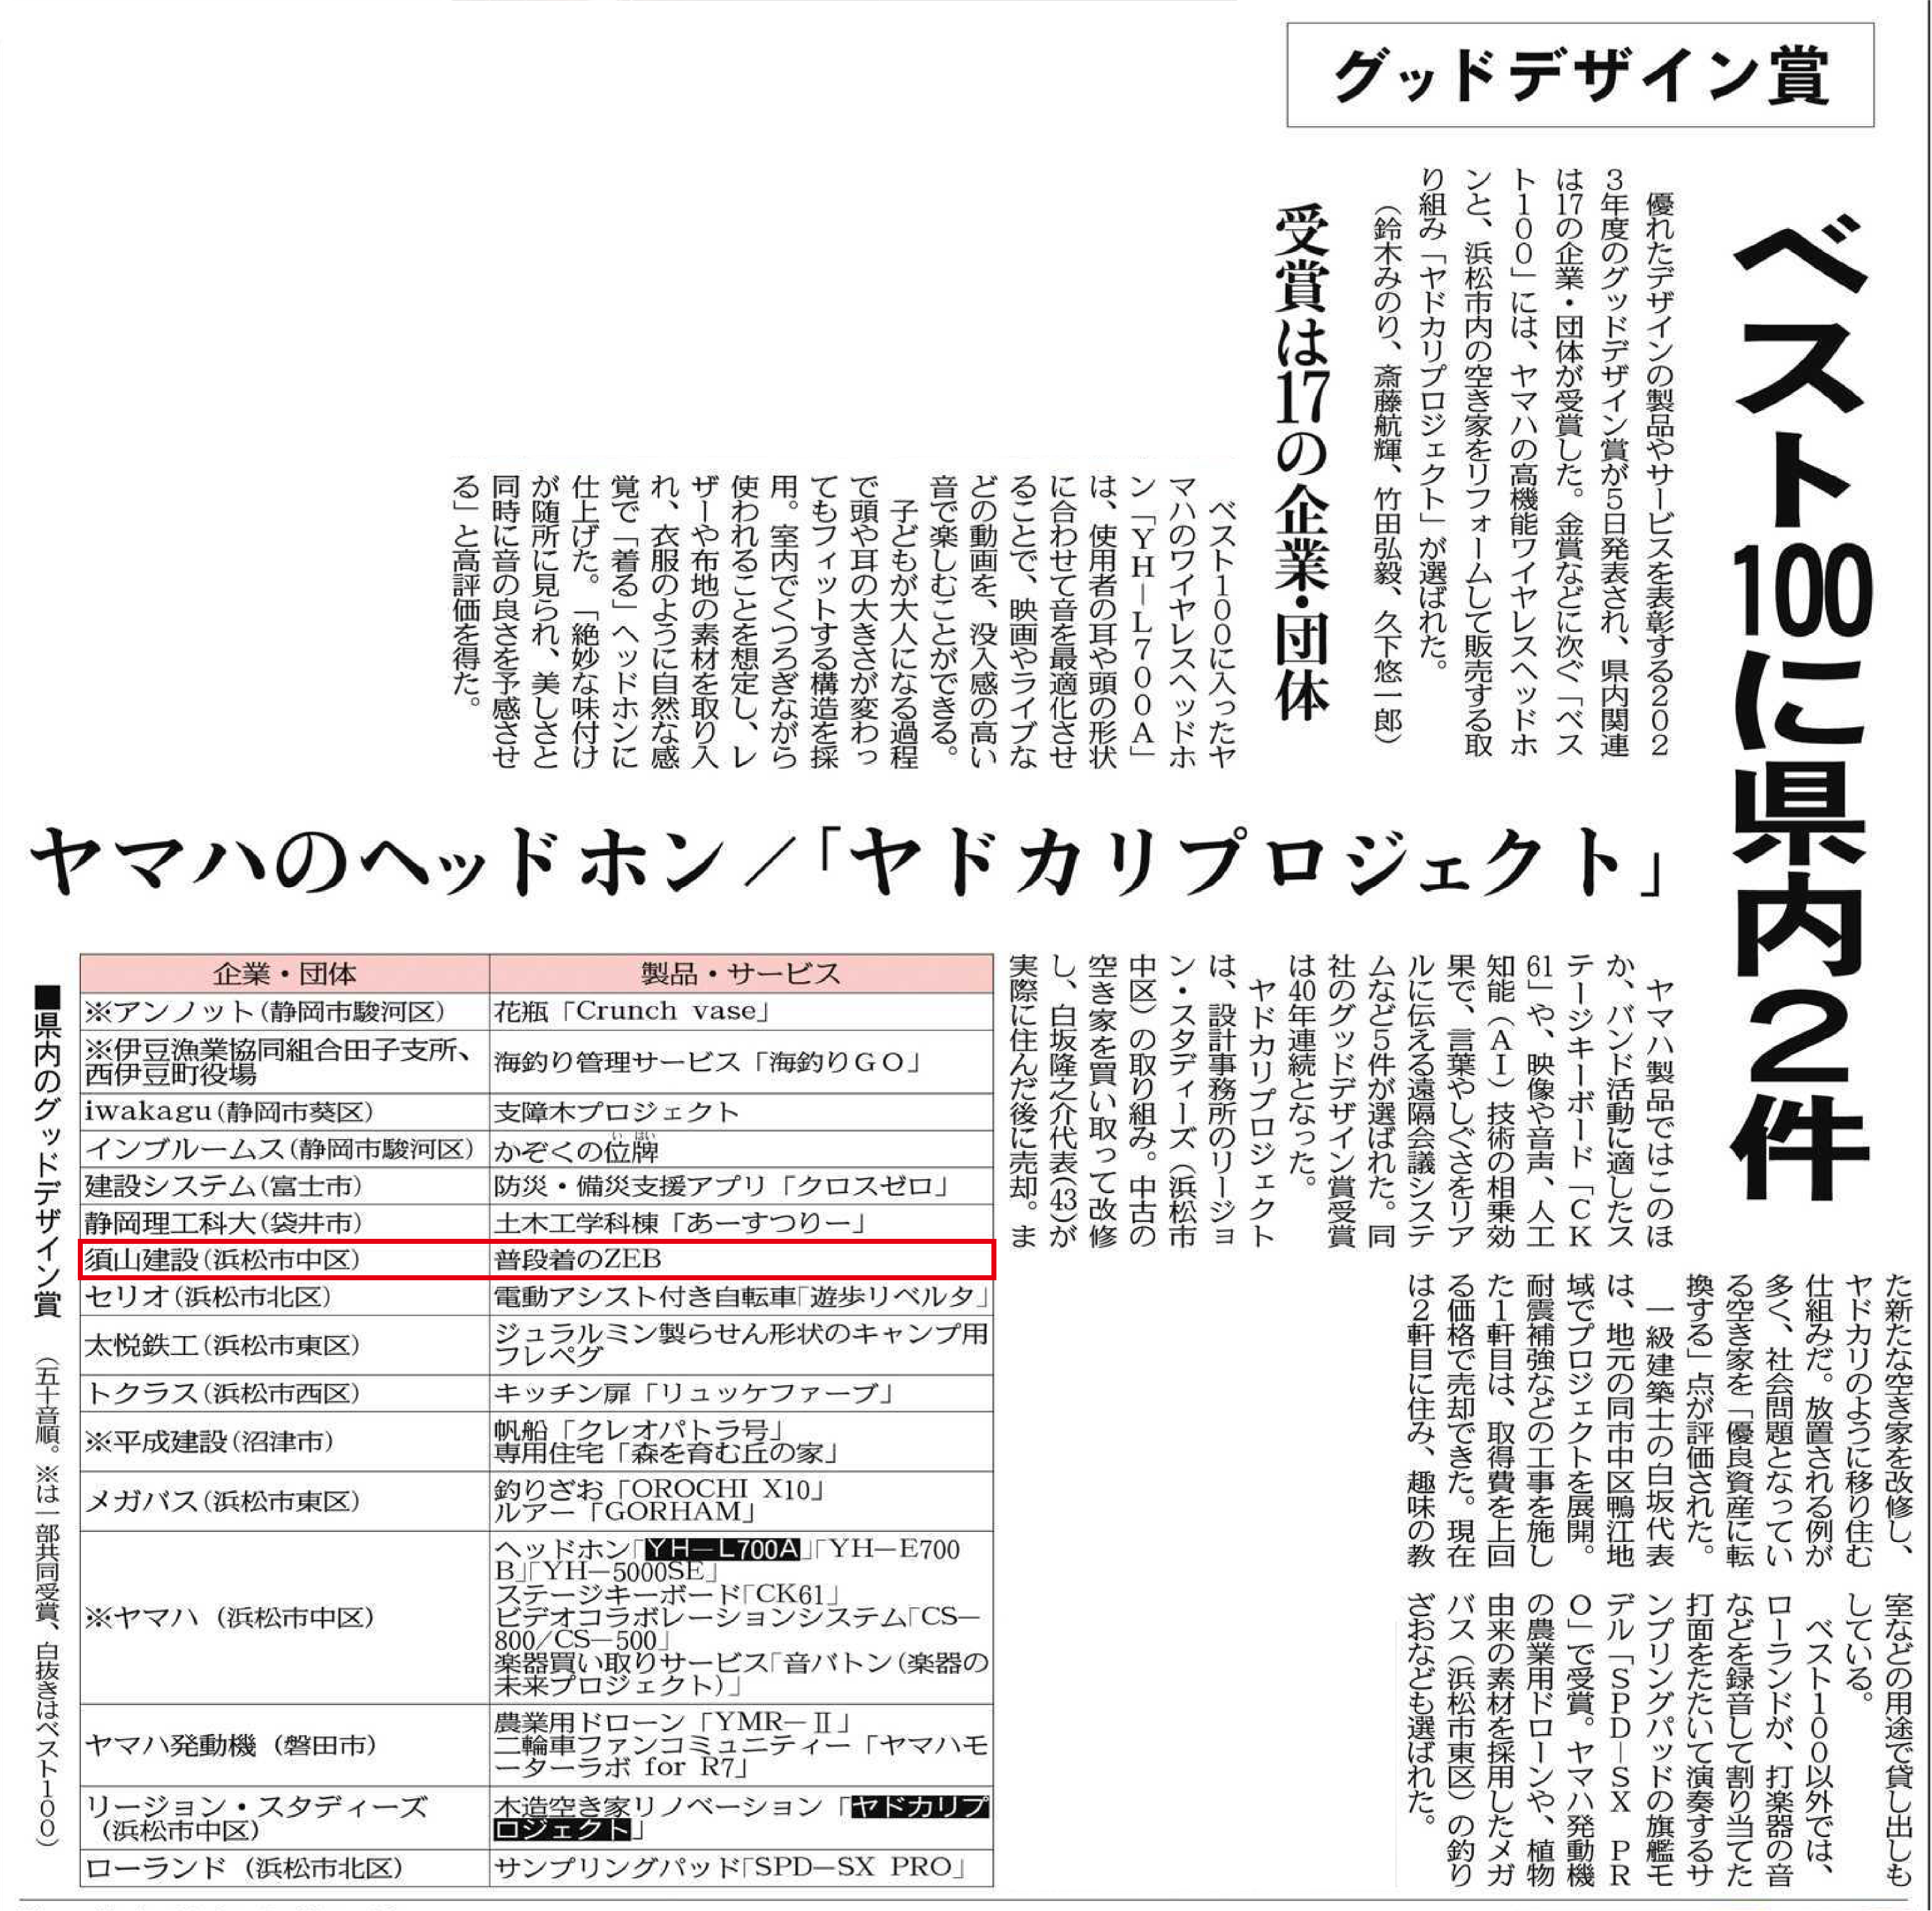 「普段着のZEB」グッドデザイン賞受賞が、中日新聞に掲載されました